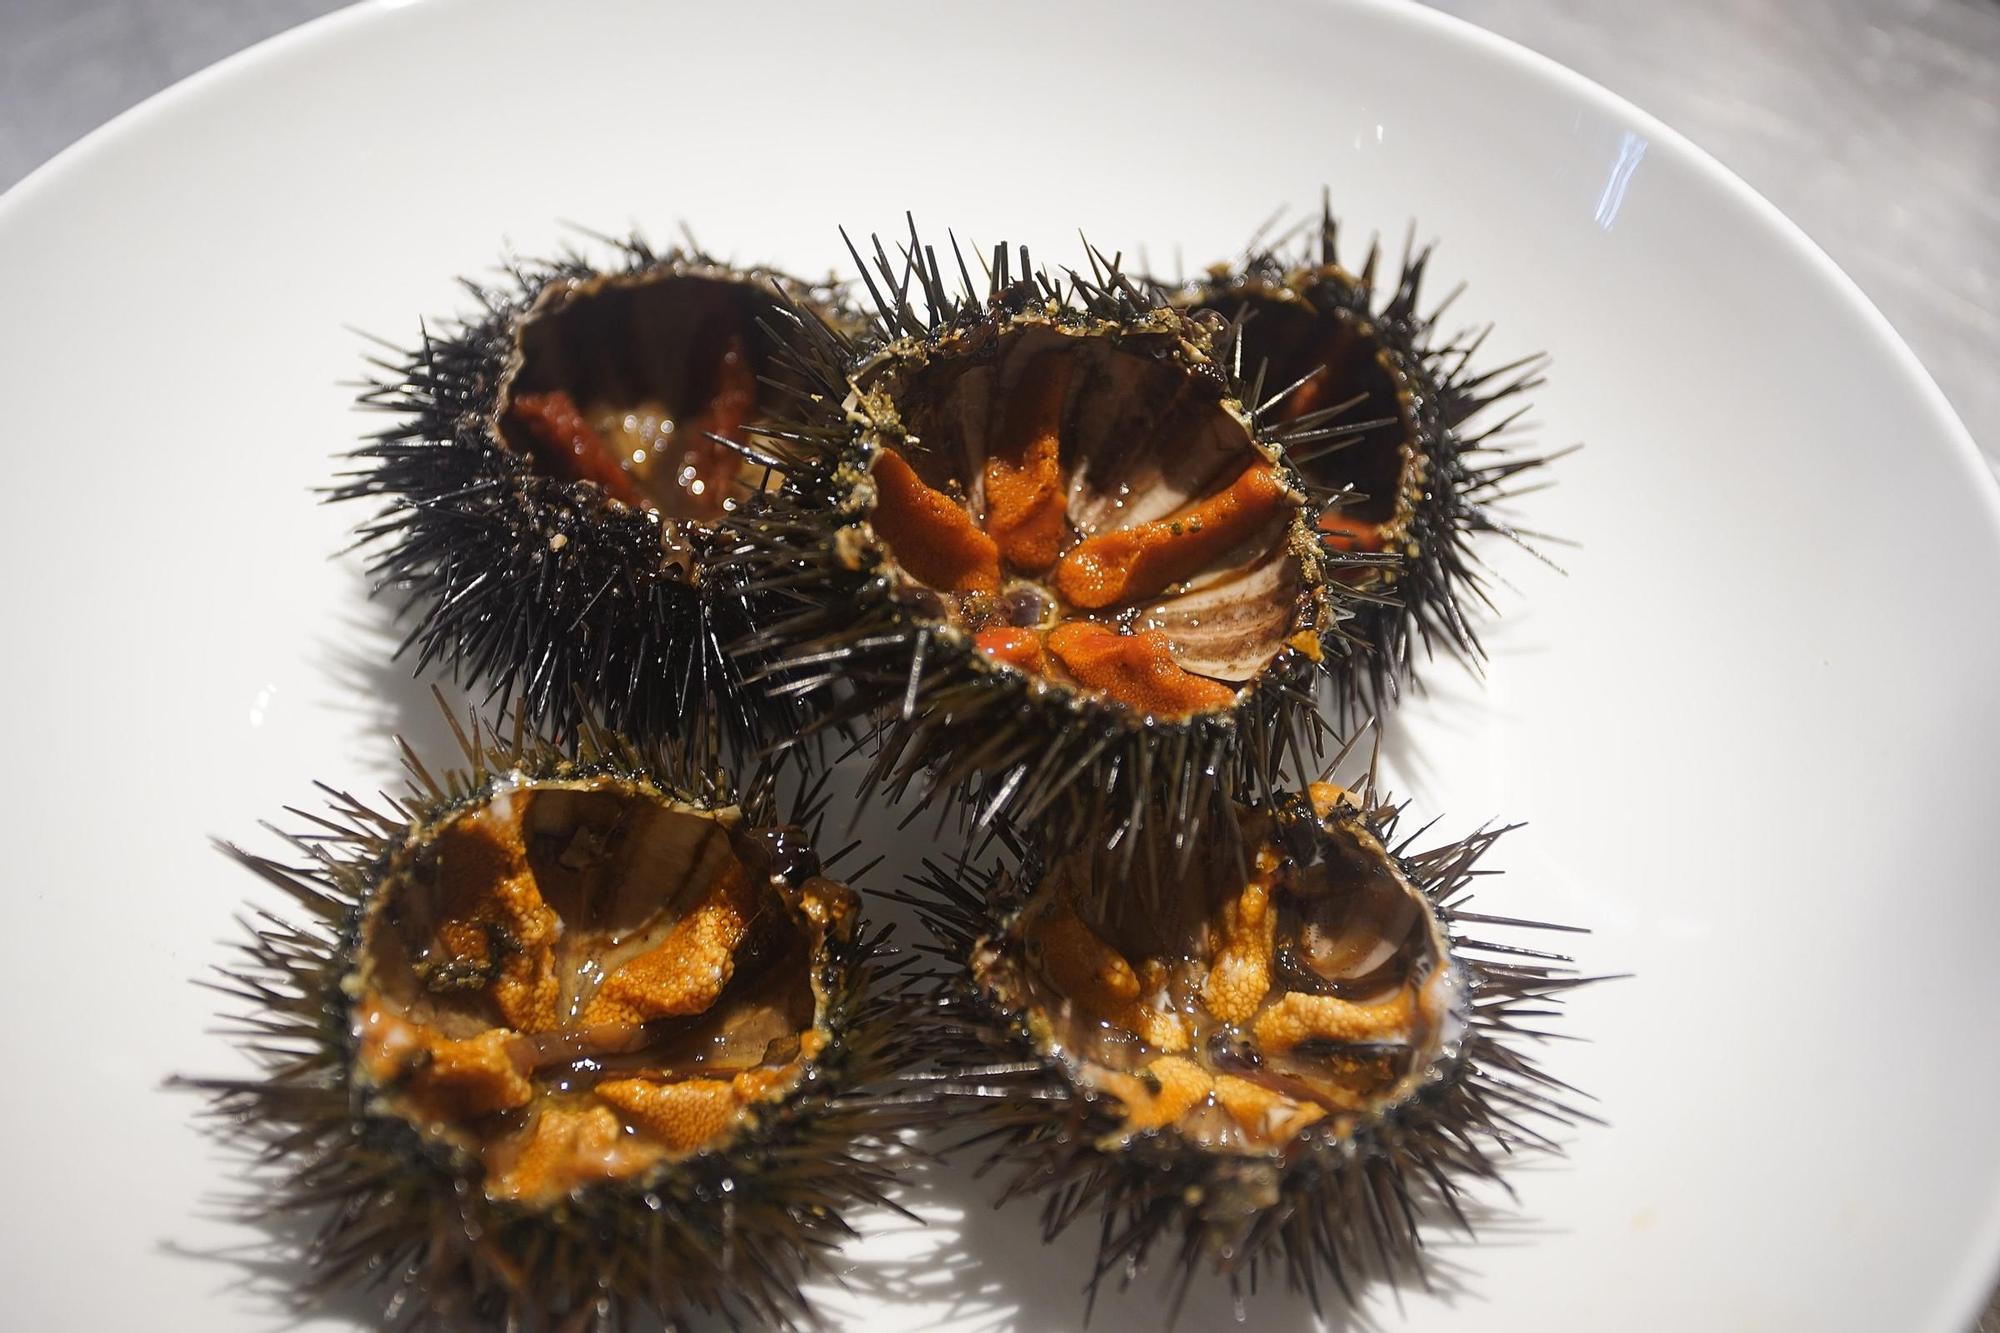 Garoines: L'exquisit gust de mar de la Costa Brava